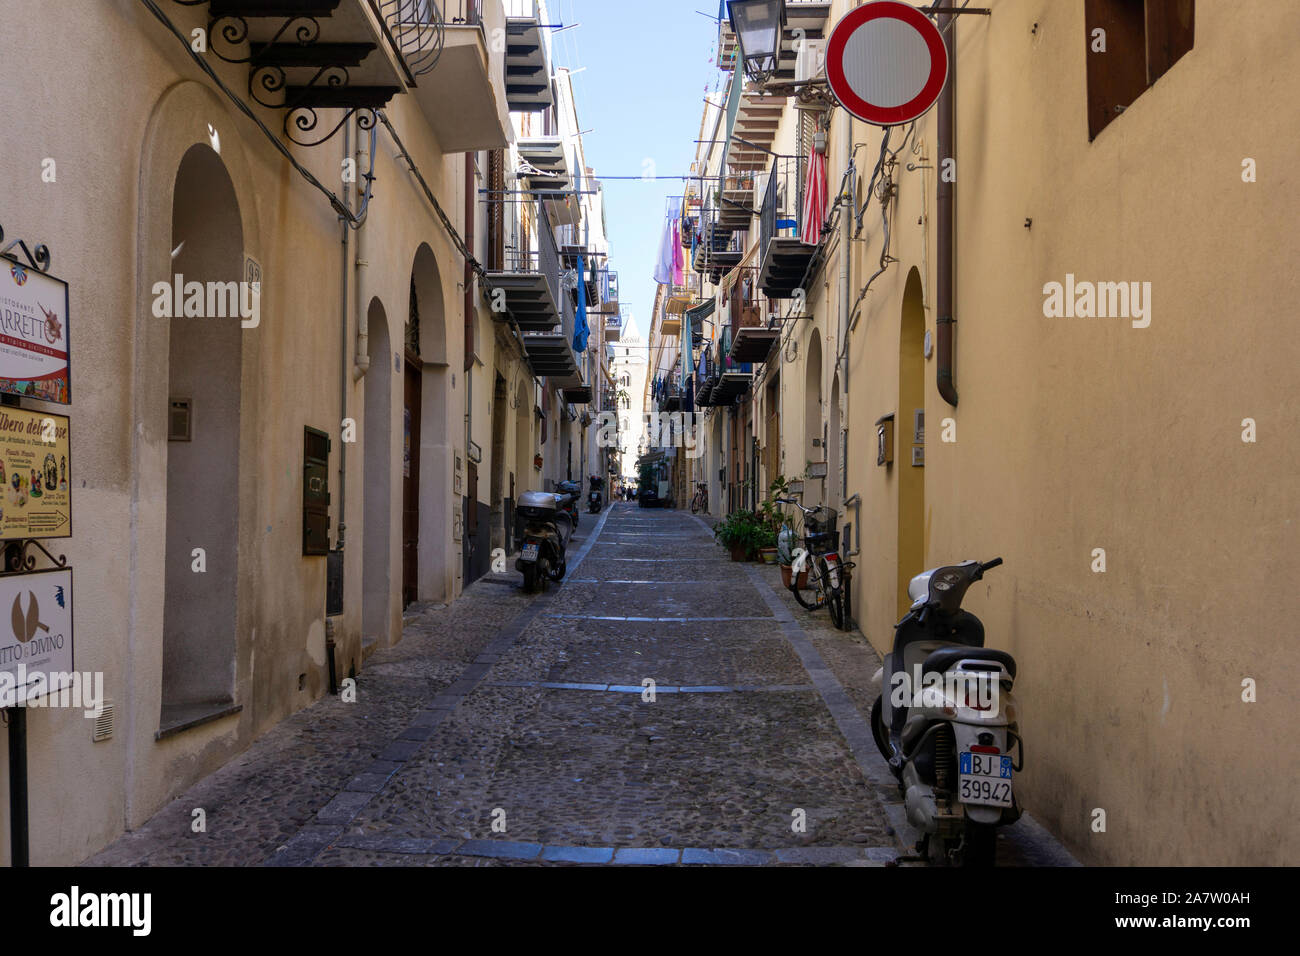 L'une des nombreuses rues étroites colorées dans la ville de Cefalú sur l'île de la Sicile, Italie. Banque D'Images